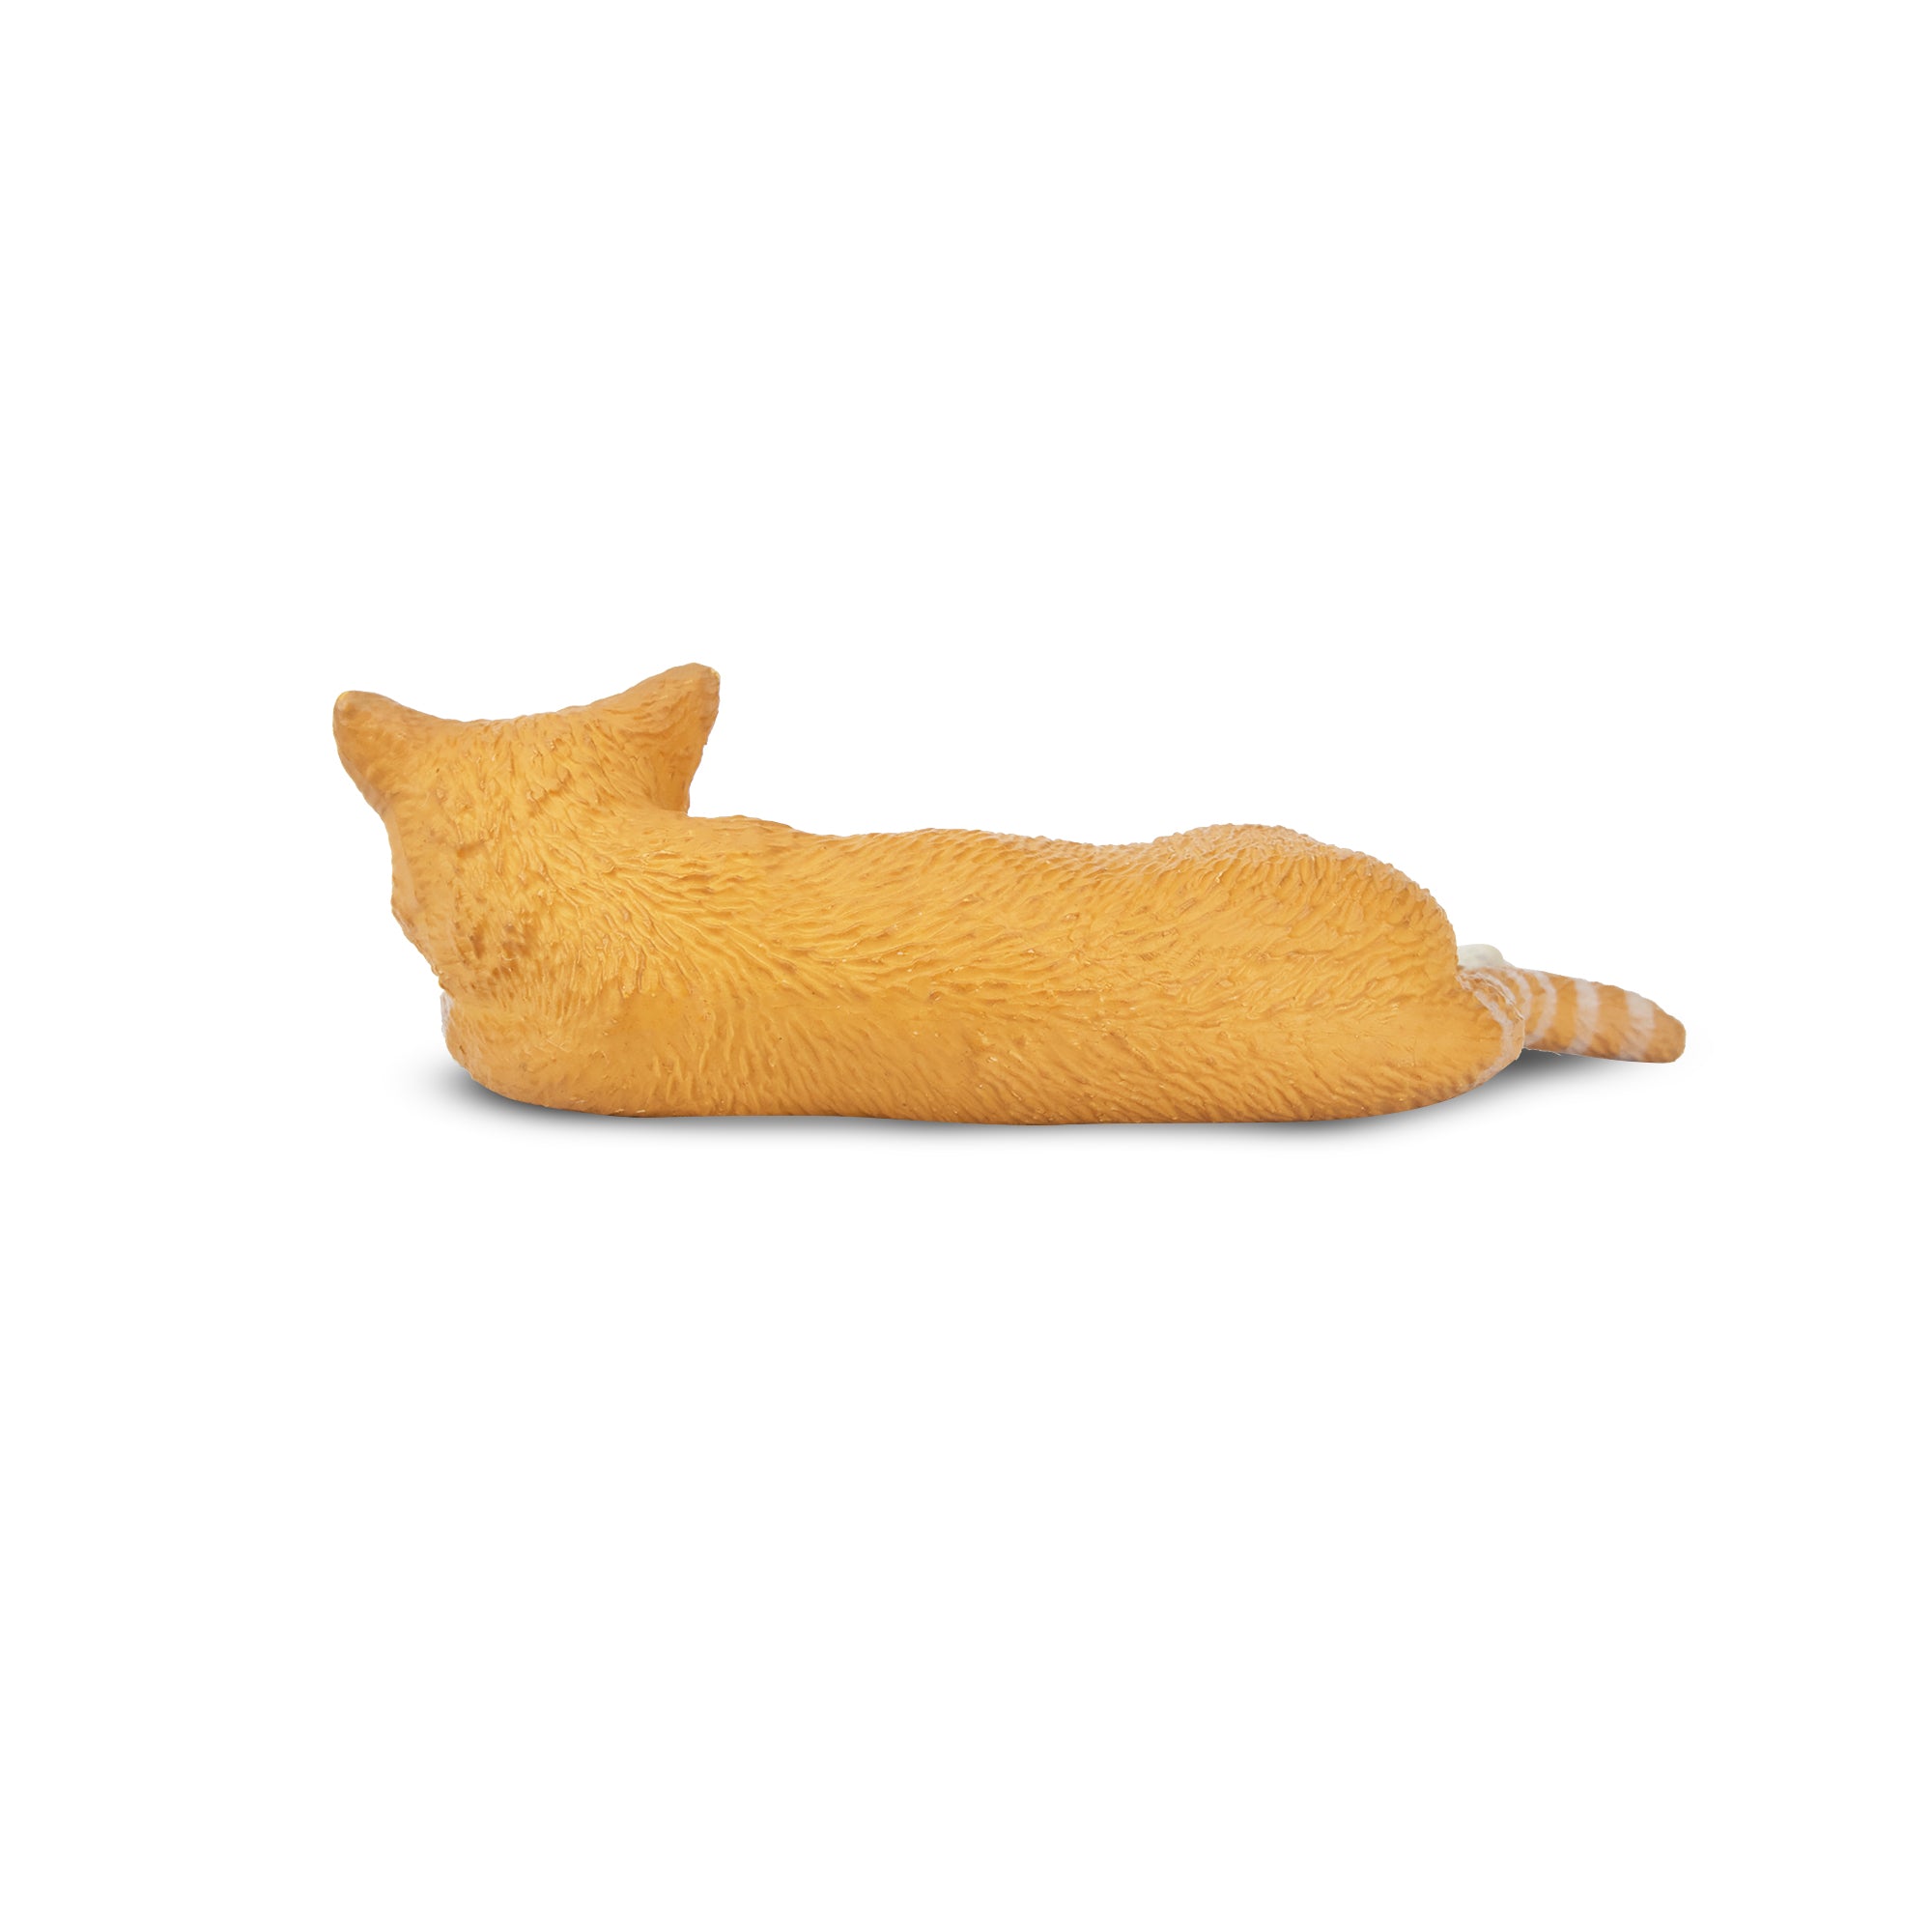 Toymany Mini Lying Orange Cat Figurine Toy-2